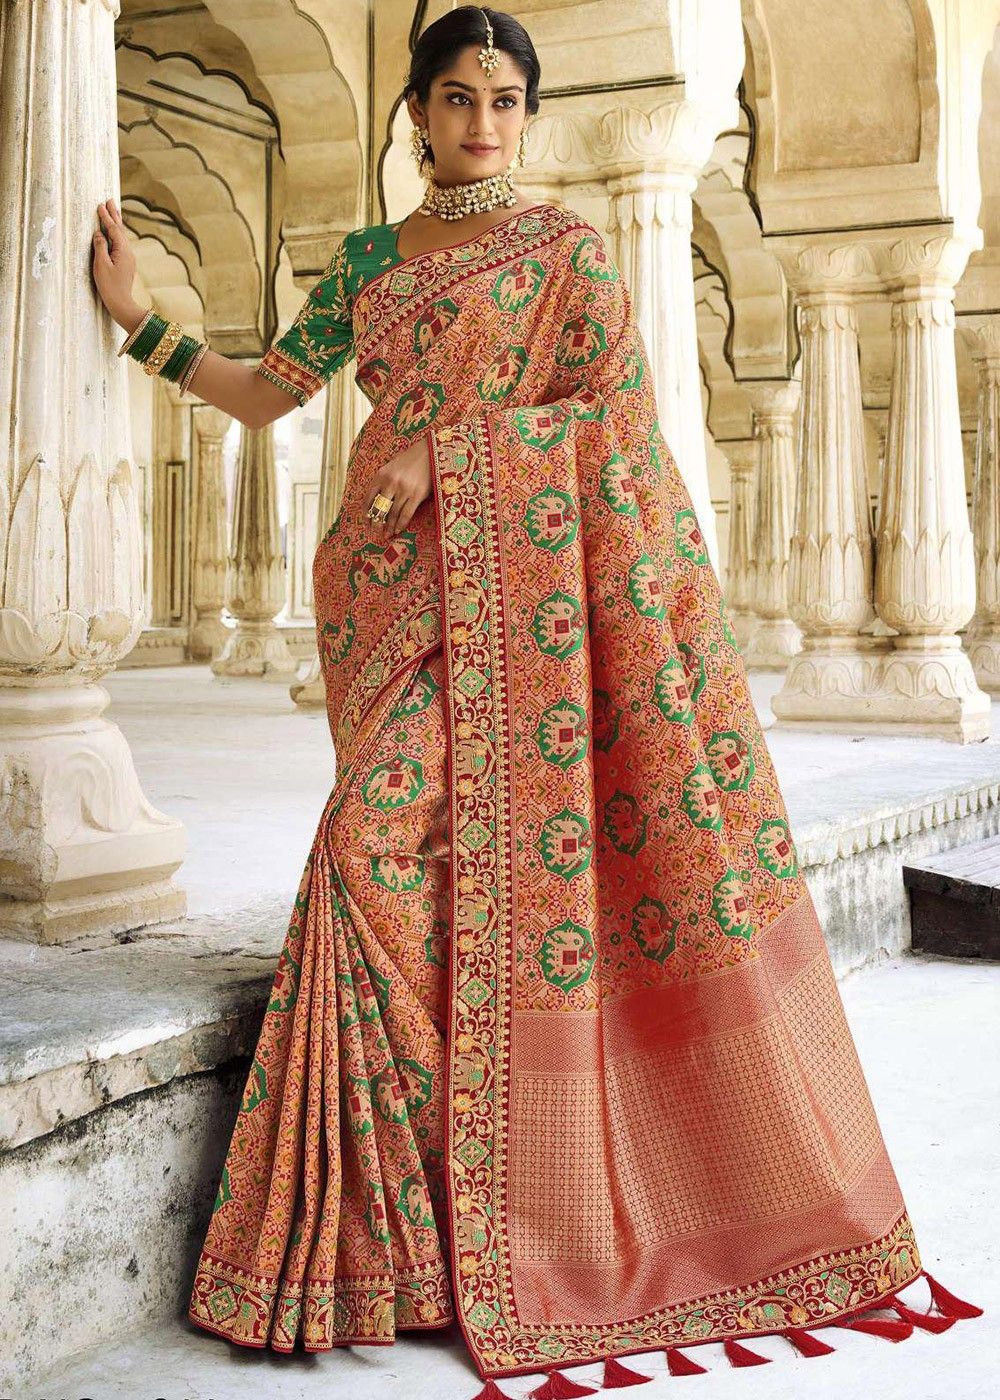 Discover more than 82 bridal banarasi silk saree best